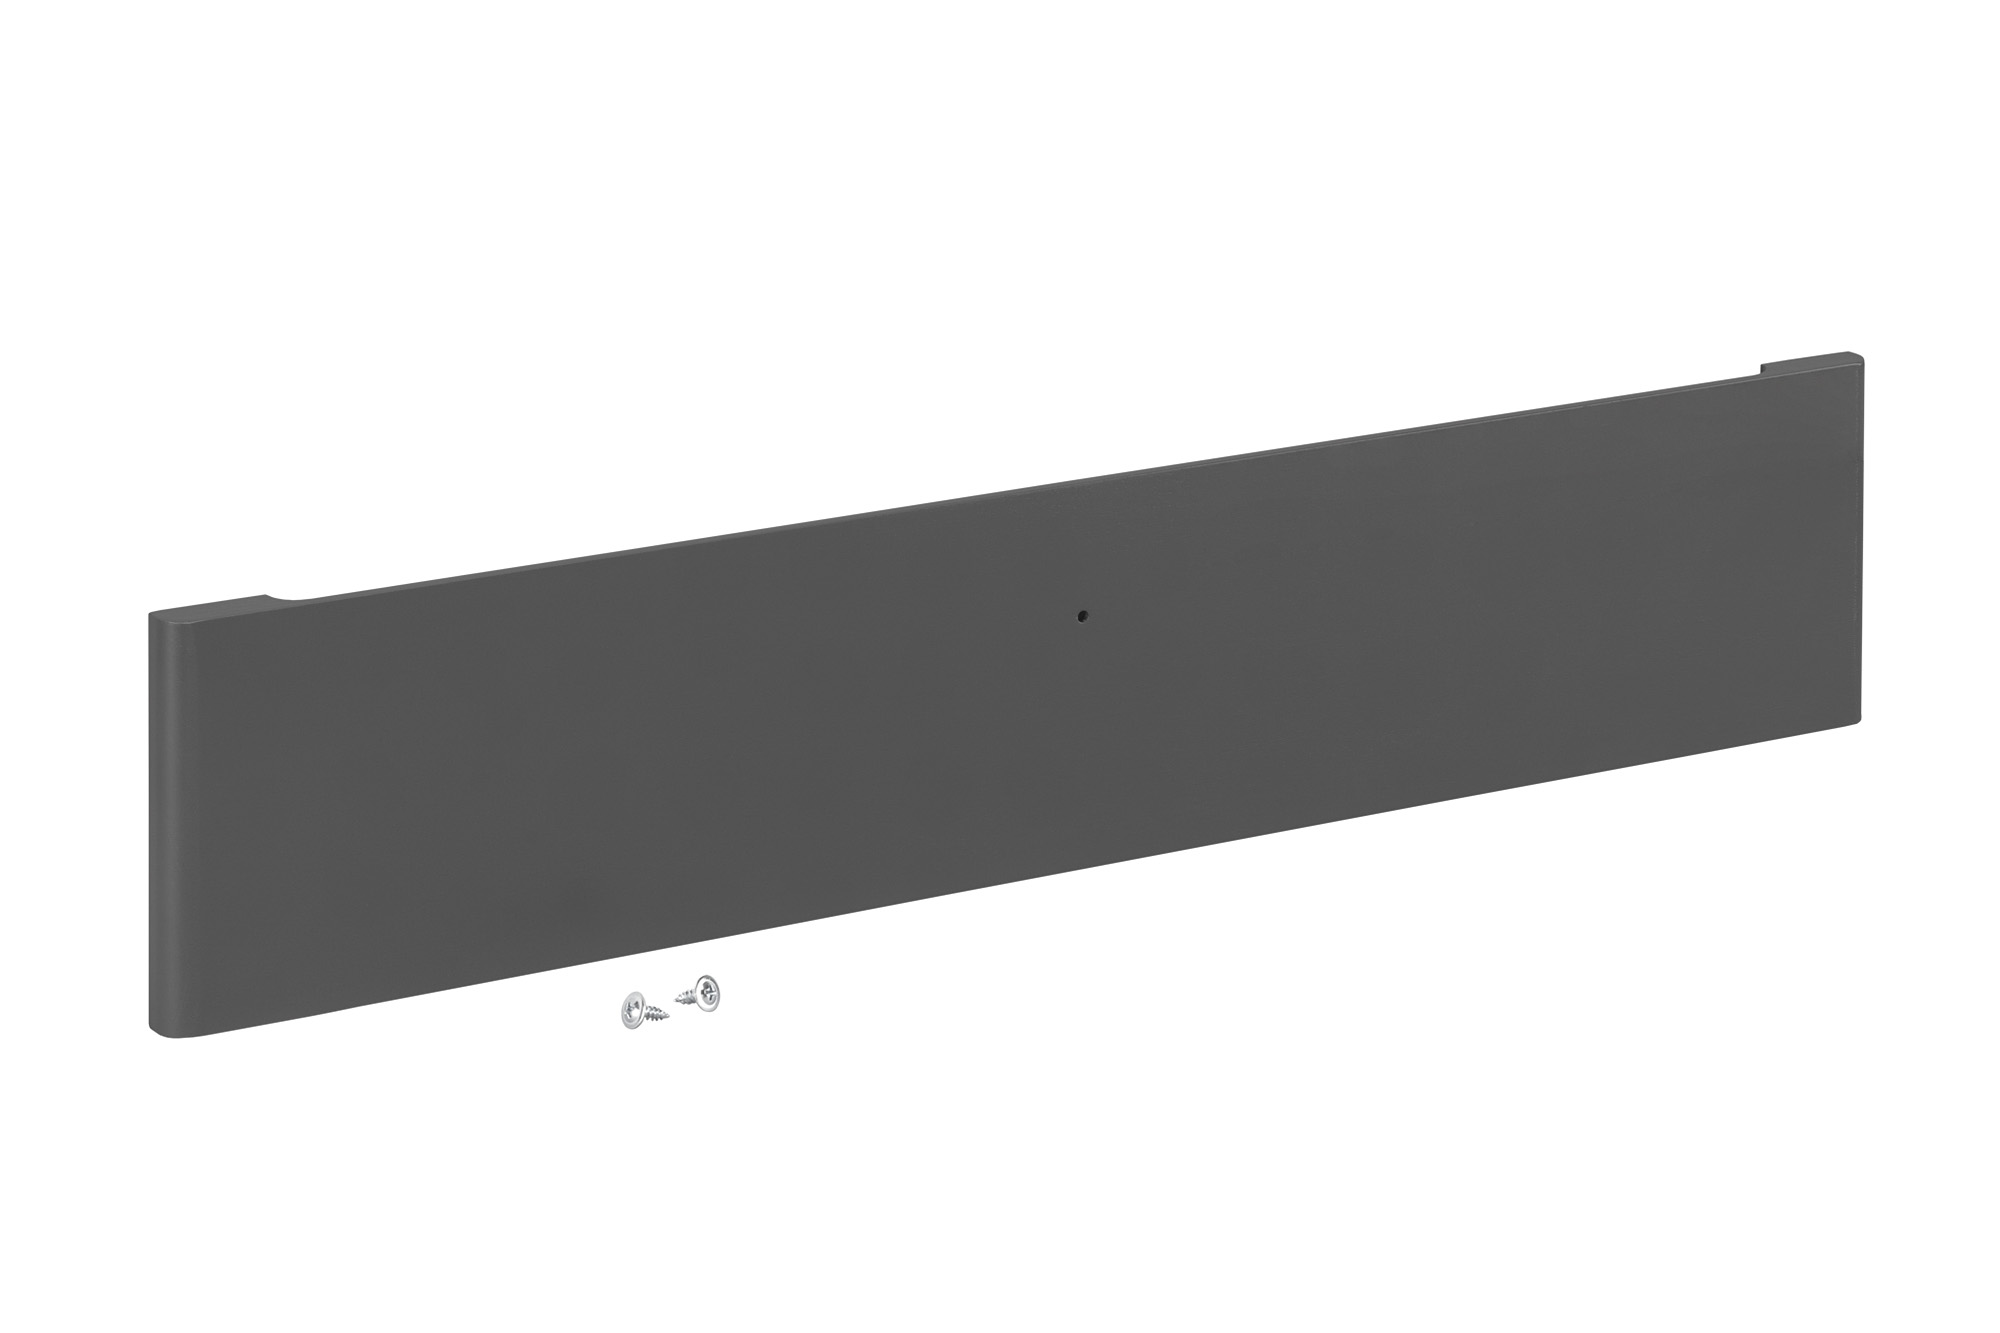 Передняя панель Decor на 1 рельс (серый)